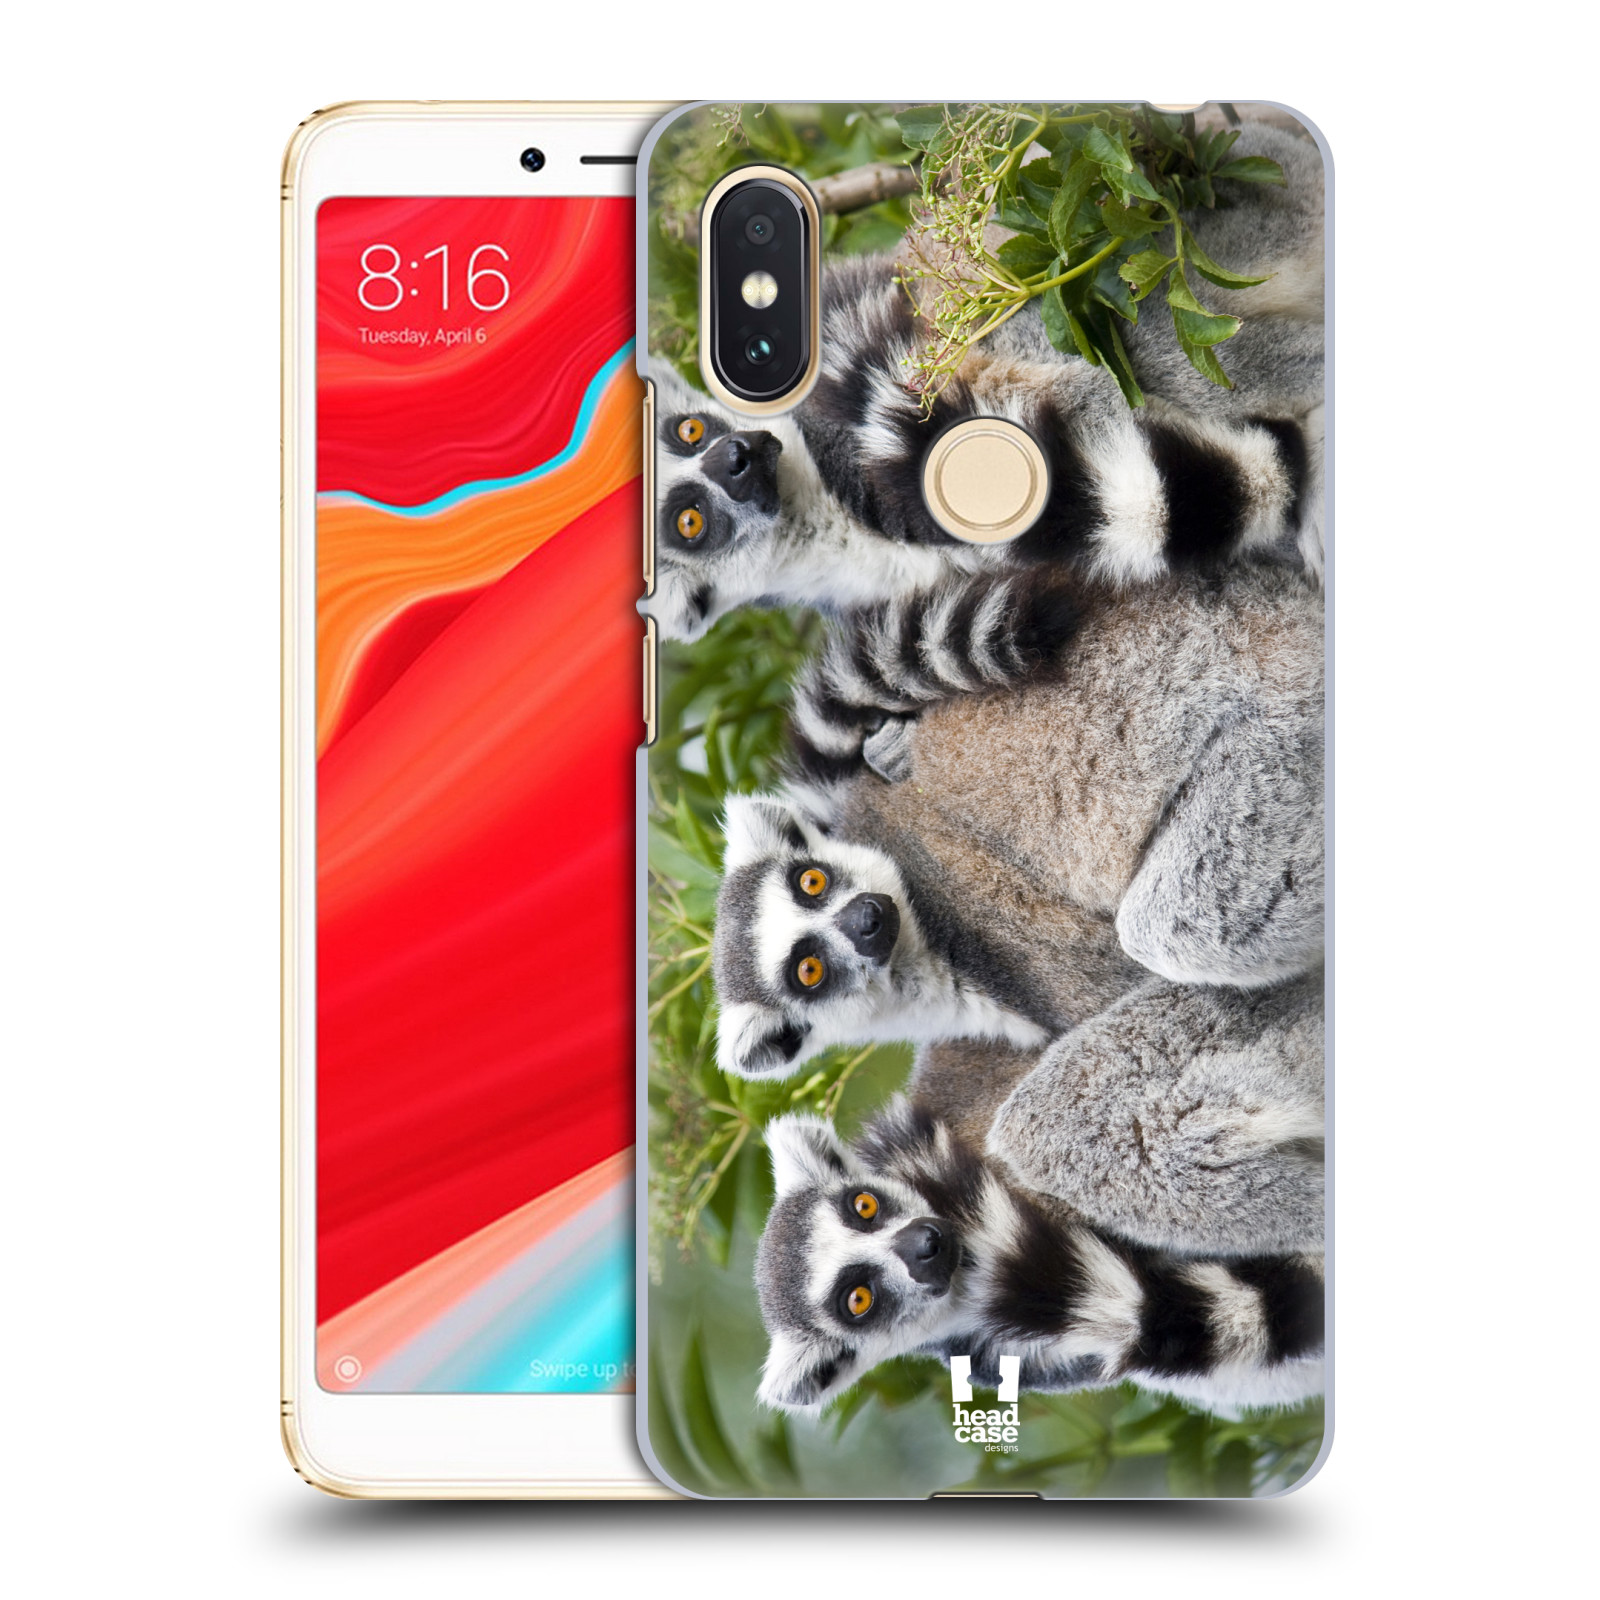 HEAD CASE plastový obal na mobil Xiaomi Redmi S2 vzor slavná zvířata foto lemur